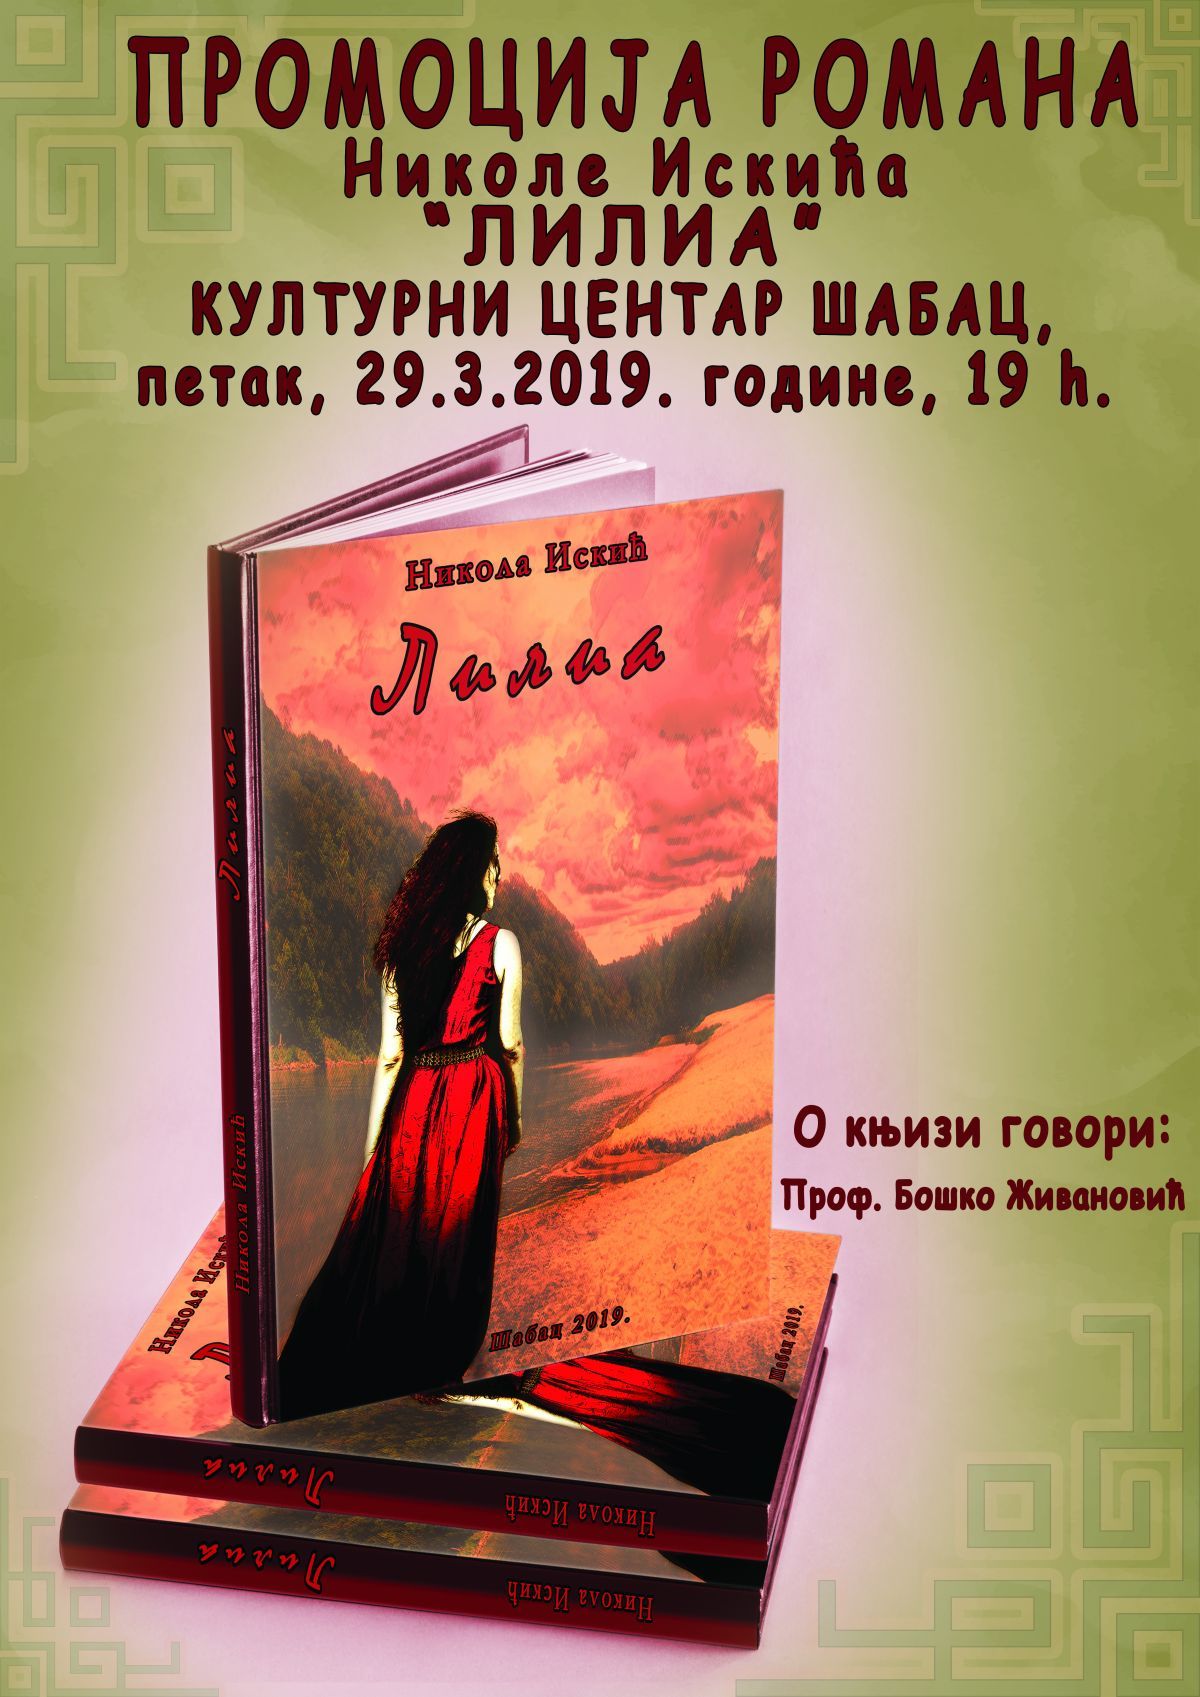 Promocija knjige "Lilia"